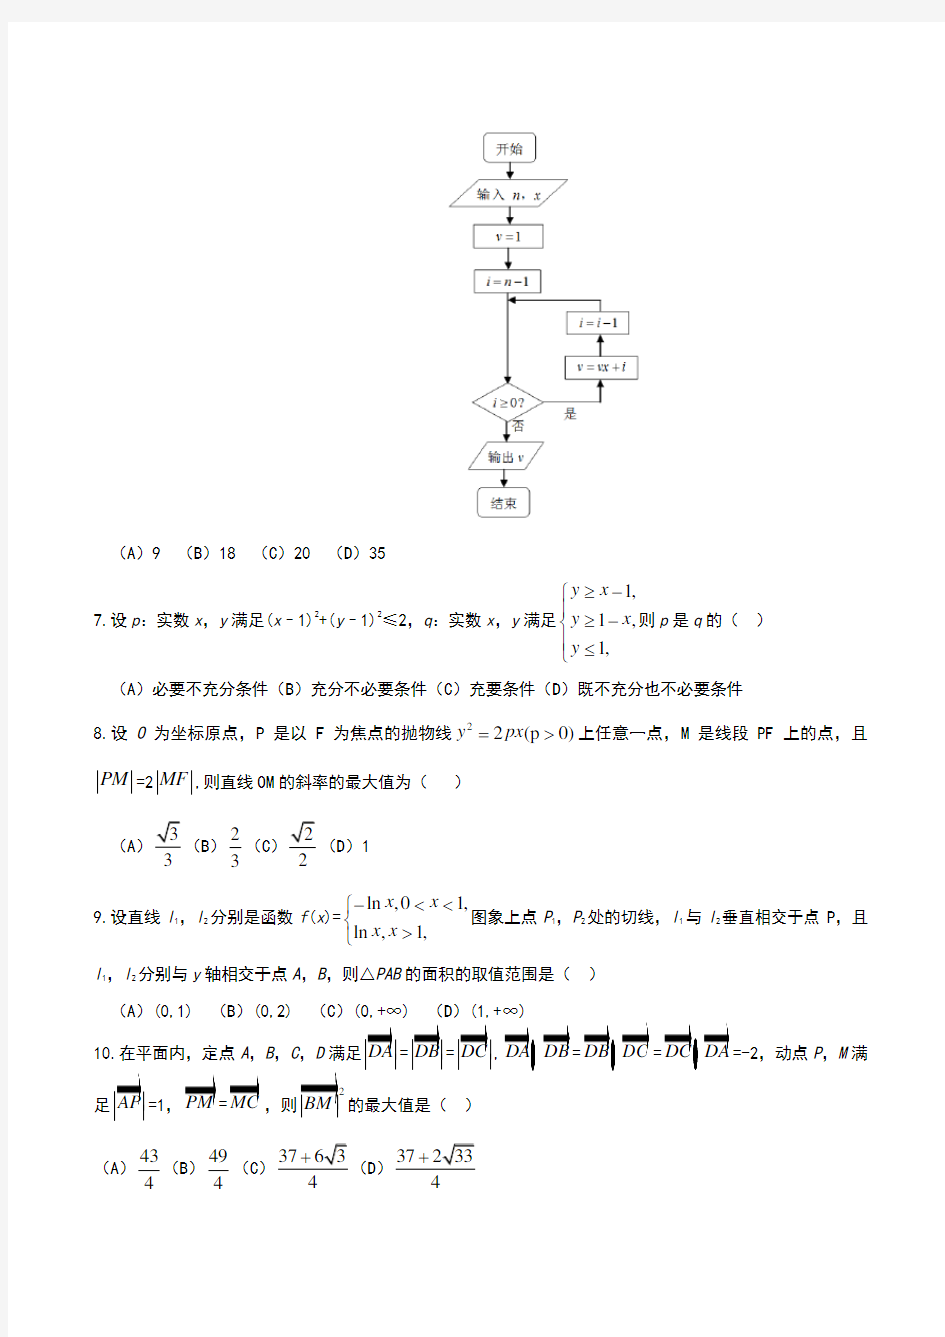 2016年四川省高考数学理科试题含答案